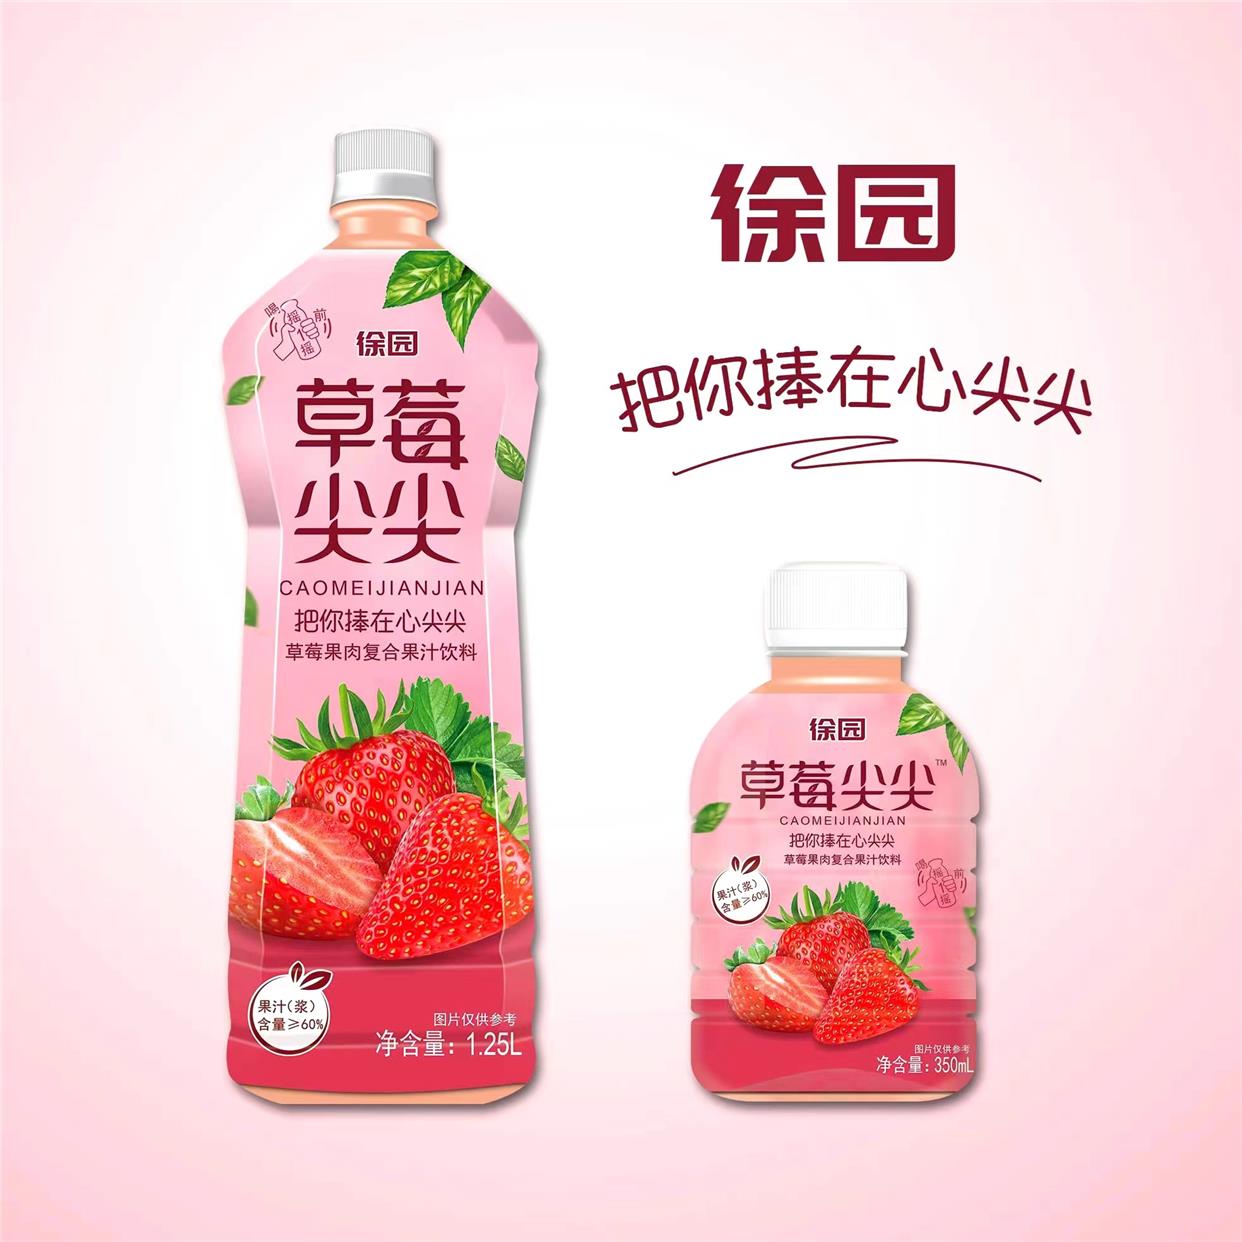 徐园炖梨果汁低脂饮料草莓果汁梨汁杨枝甘露橙汁芒果正品整箱包邮